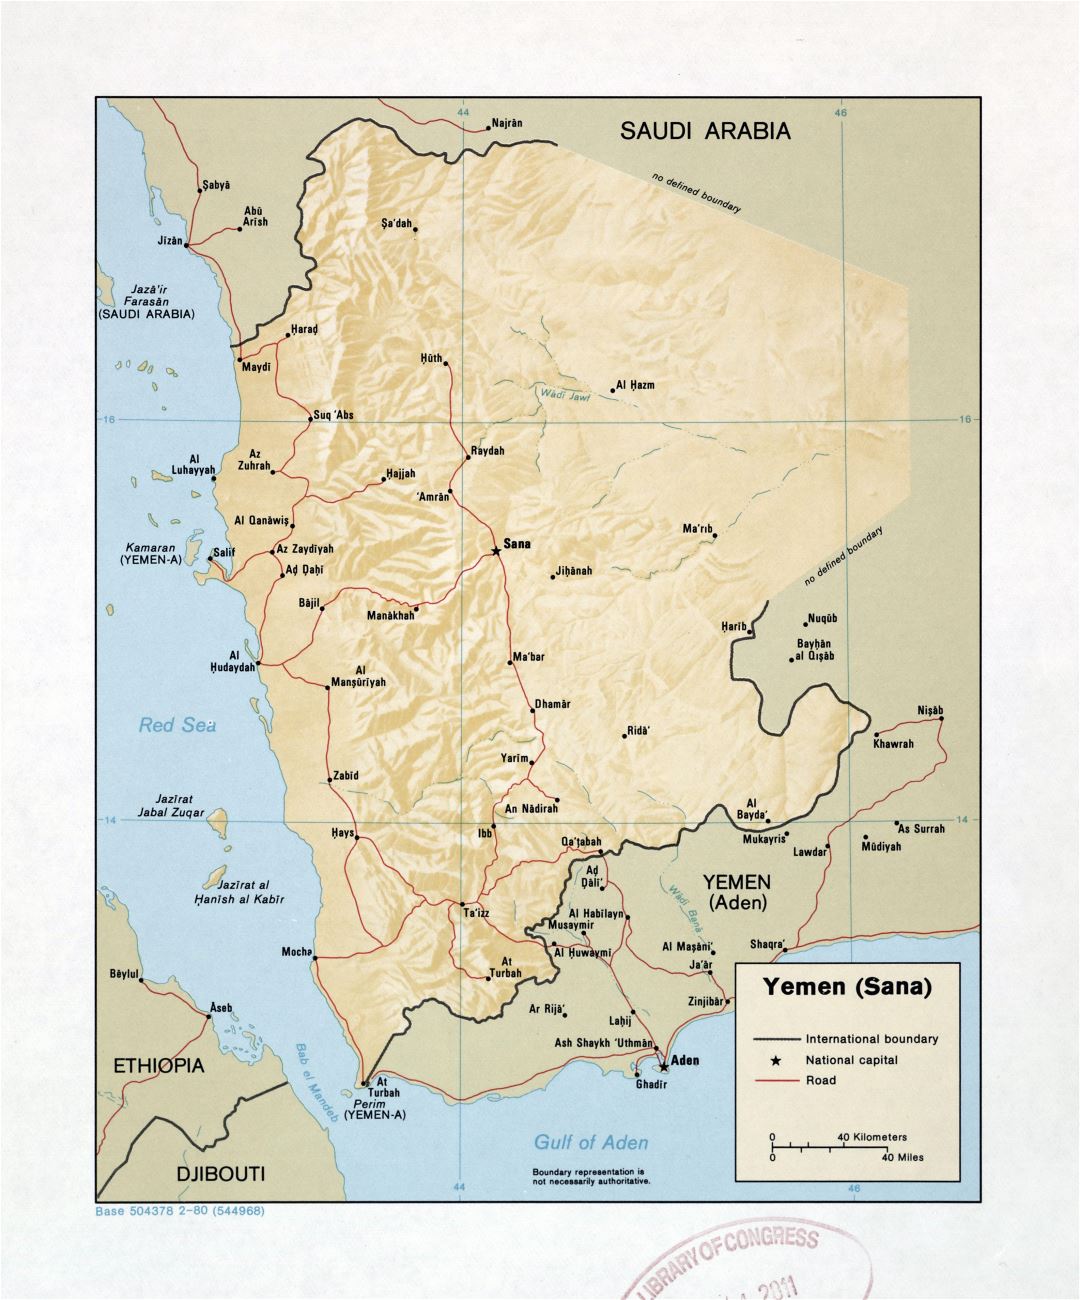 Grande detallado mapa de Yemen (Sana) con relieve, carreteras y ciudades - 1980